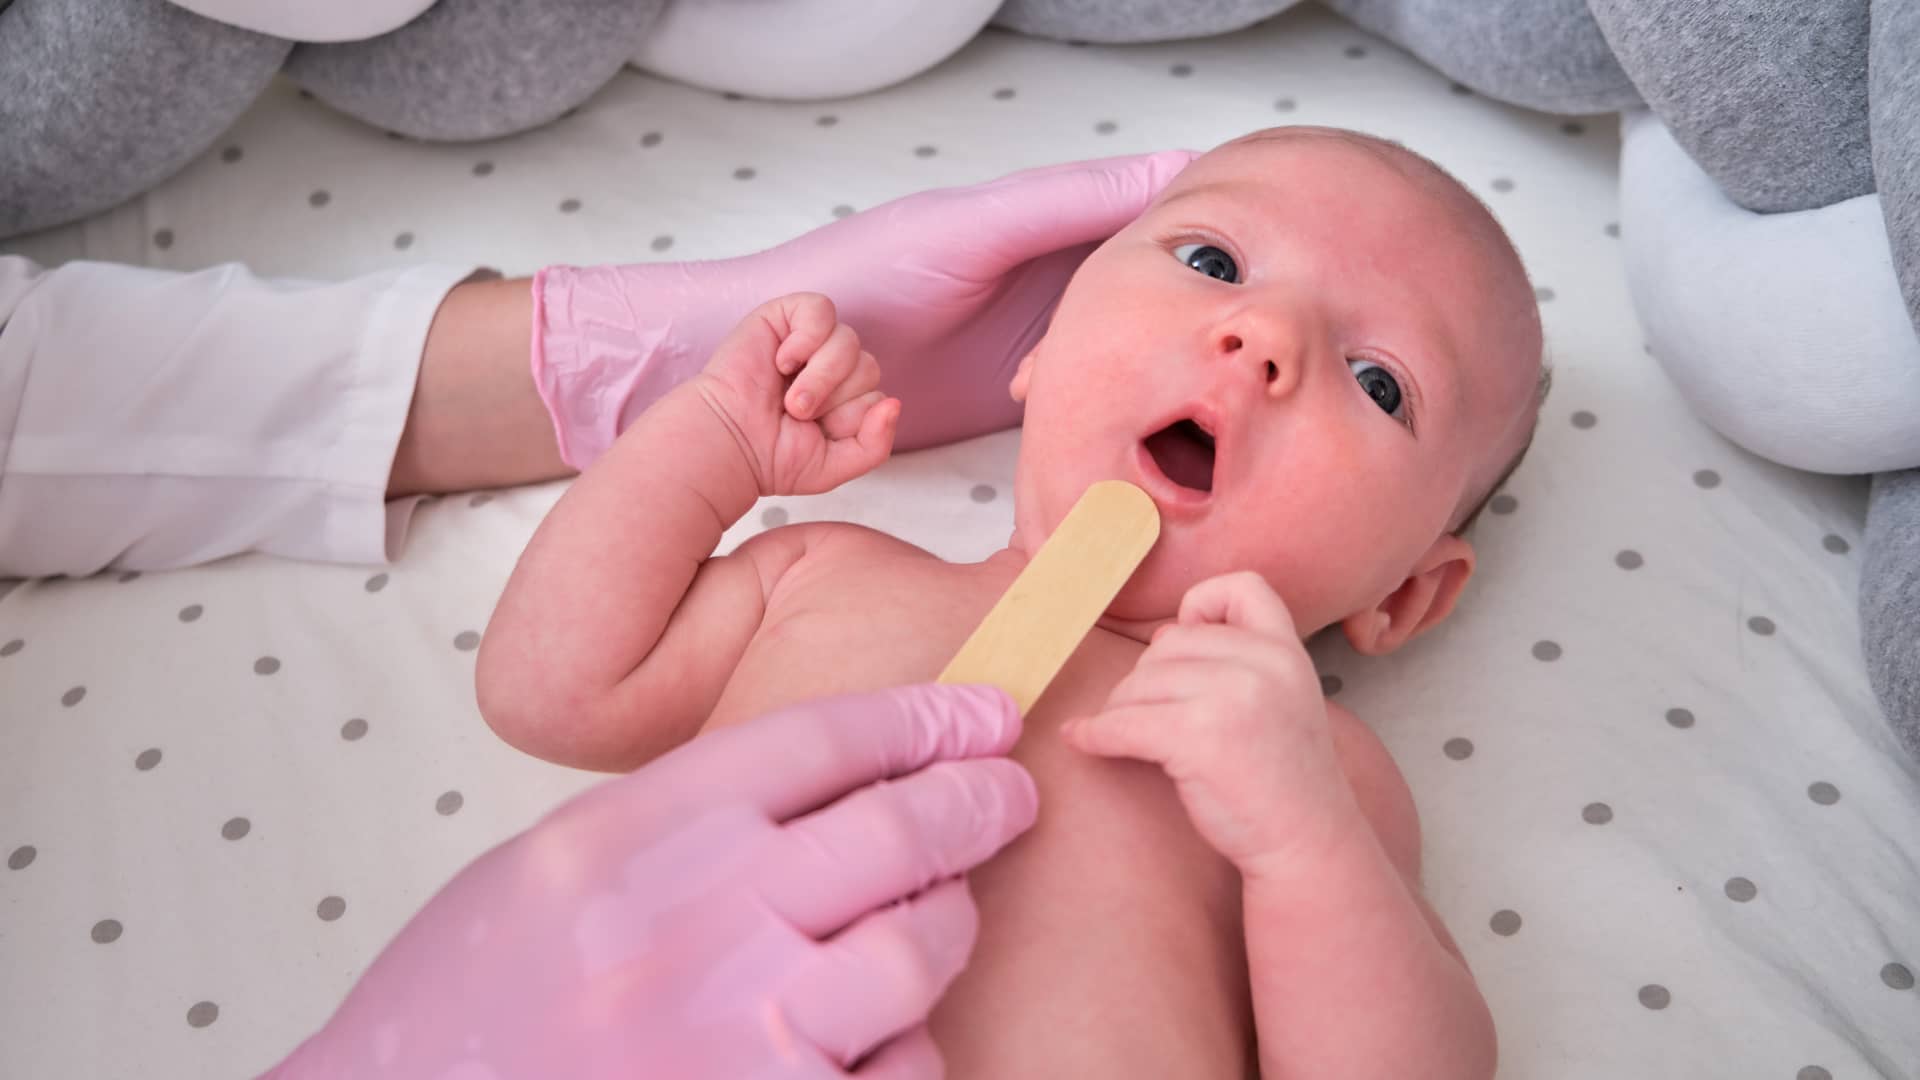 medico revisando la boca de un bebe para ver si sufre retrognatia